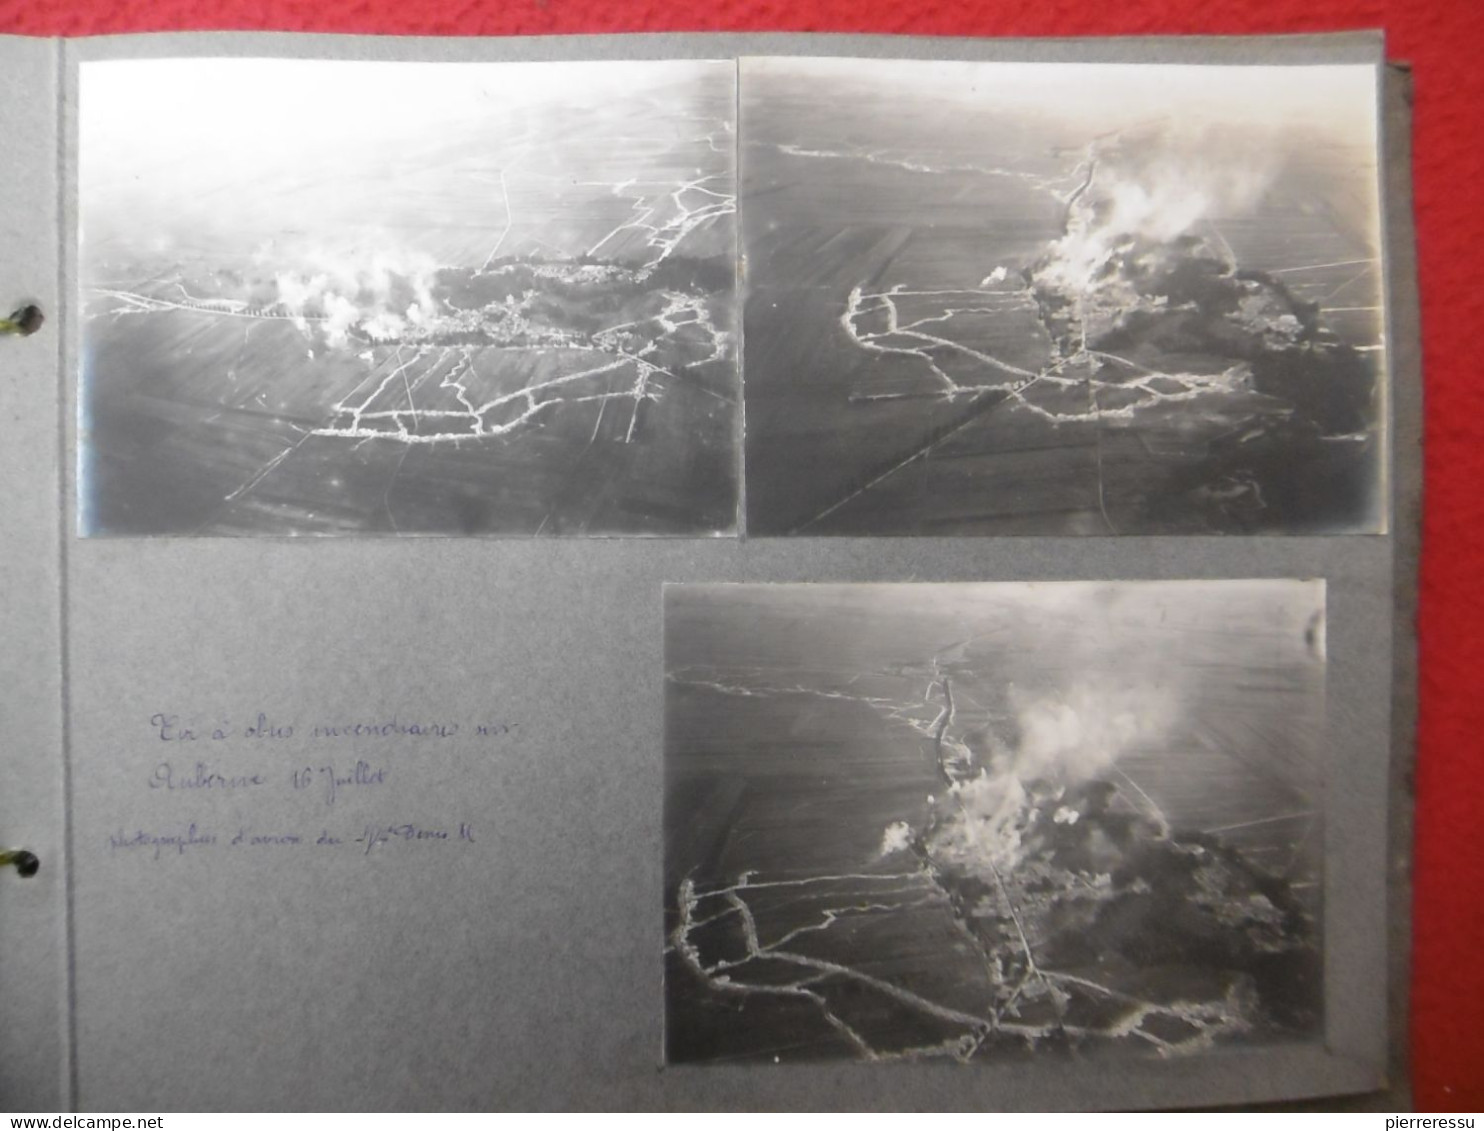 WW1 ALBUM PHOTOS PROSNES 44 REGIMENT VUES AERIENNES AUBERIVE BOMBES INCENDIAIRES CRAPOUILLOT CANONNIÈRES - War, Military